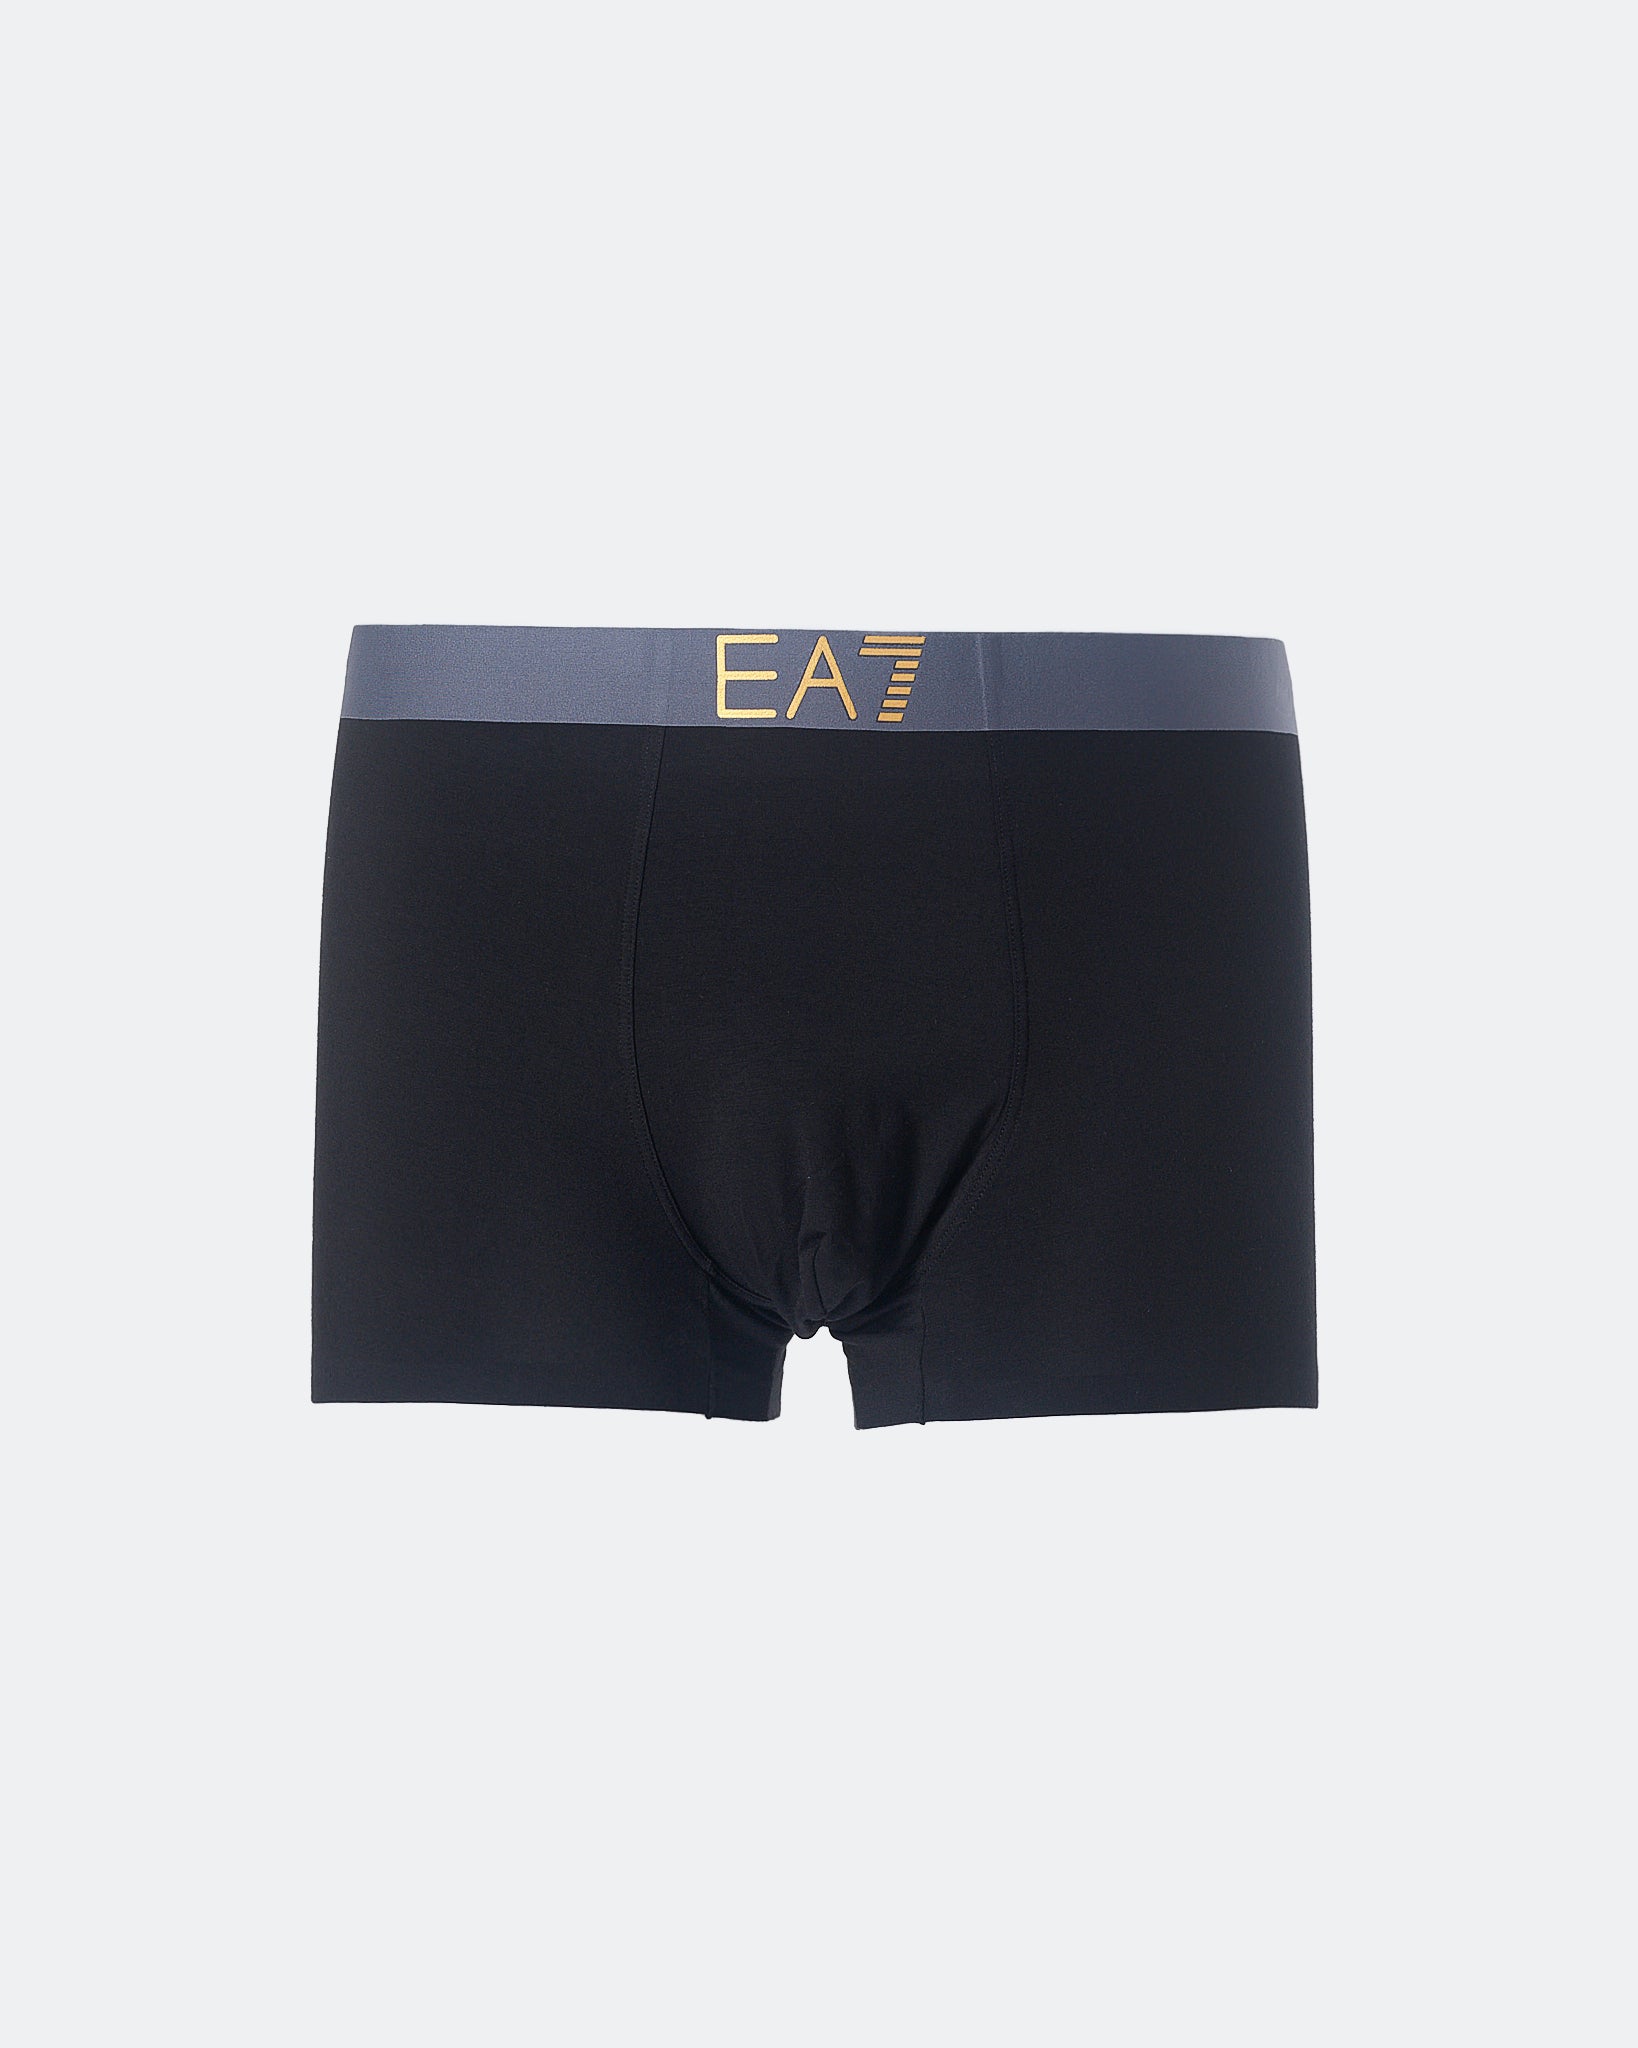 ARM EA7 Logo Printed Men Black Underwear 7.50